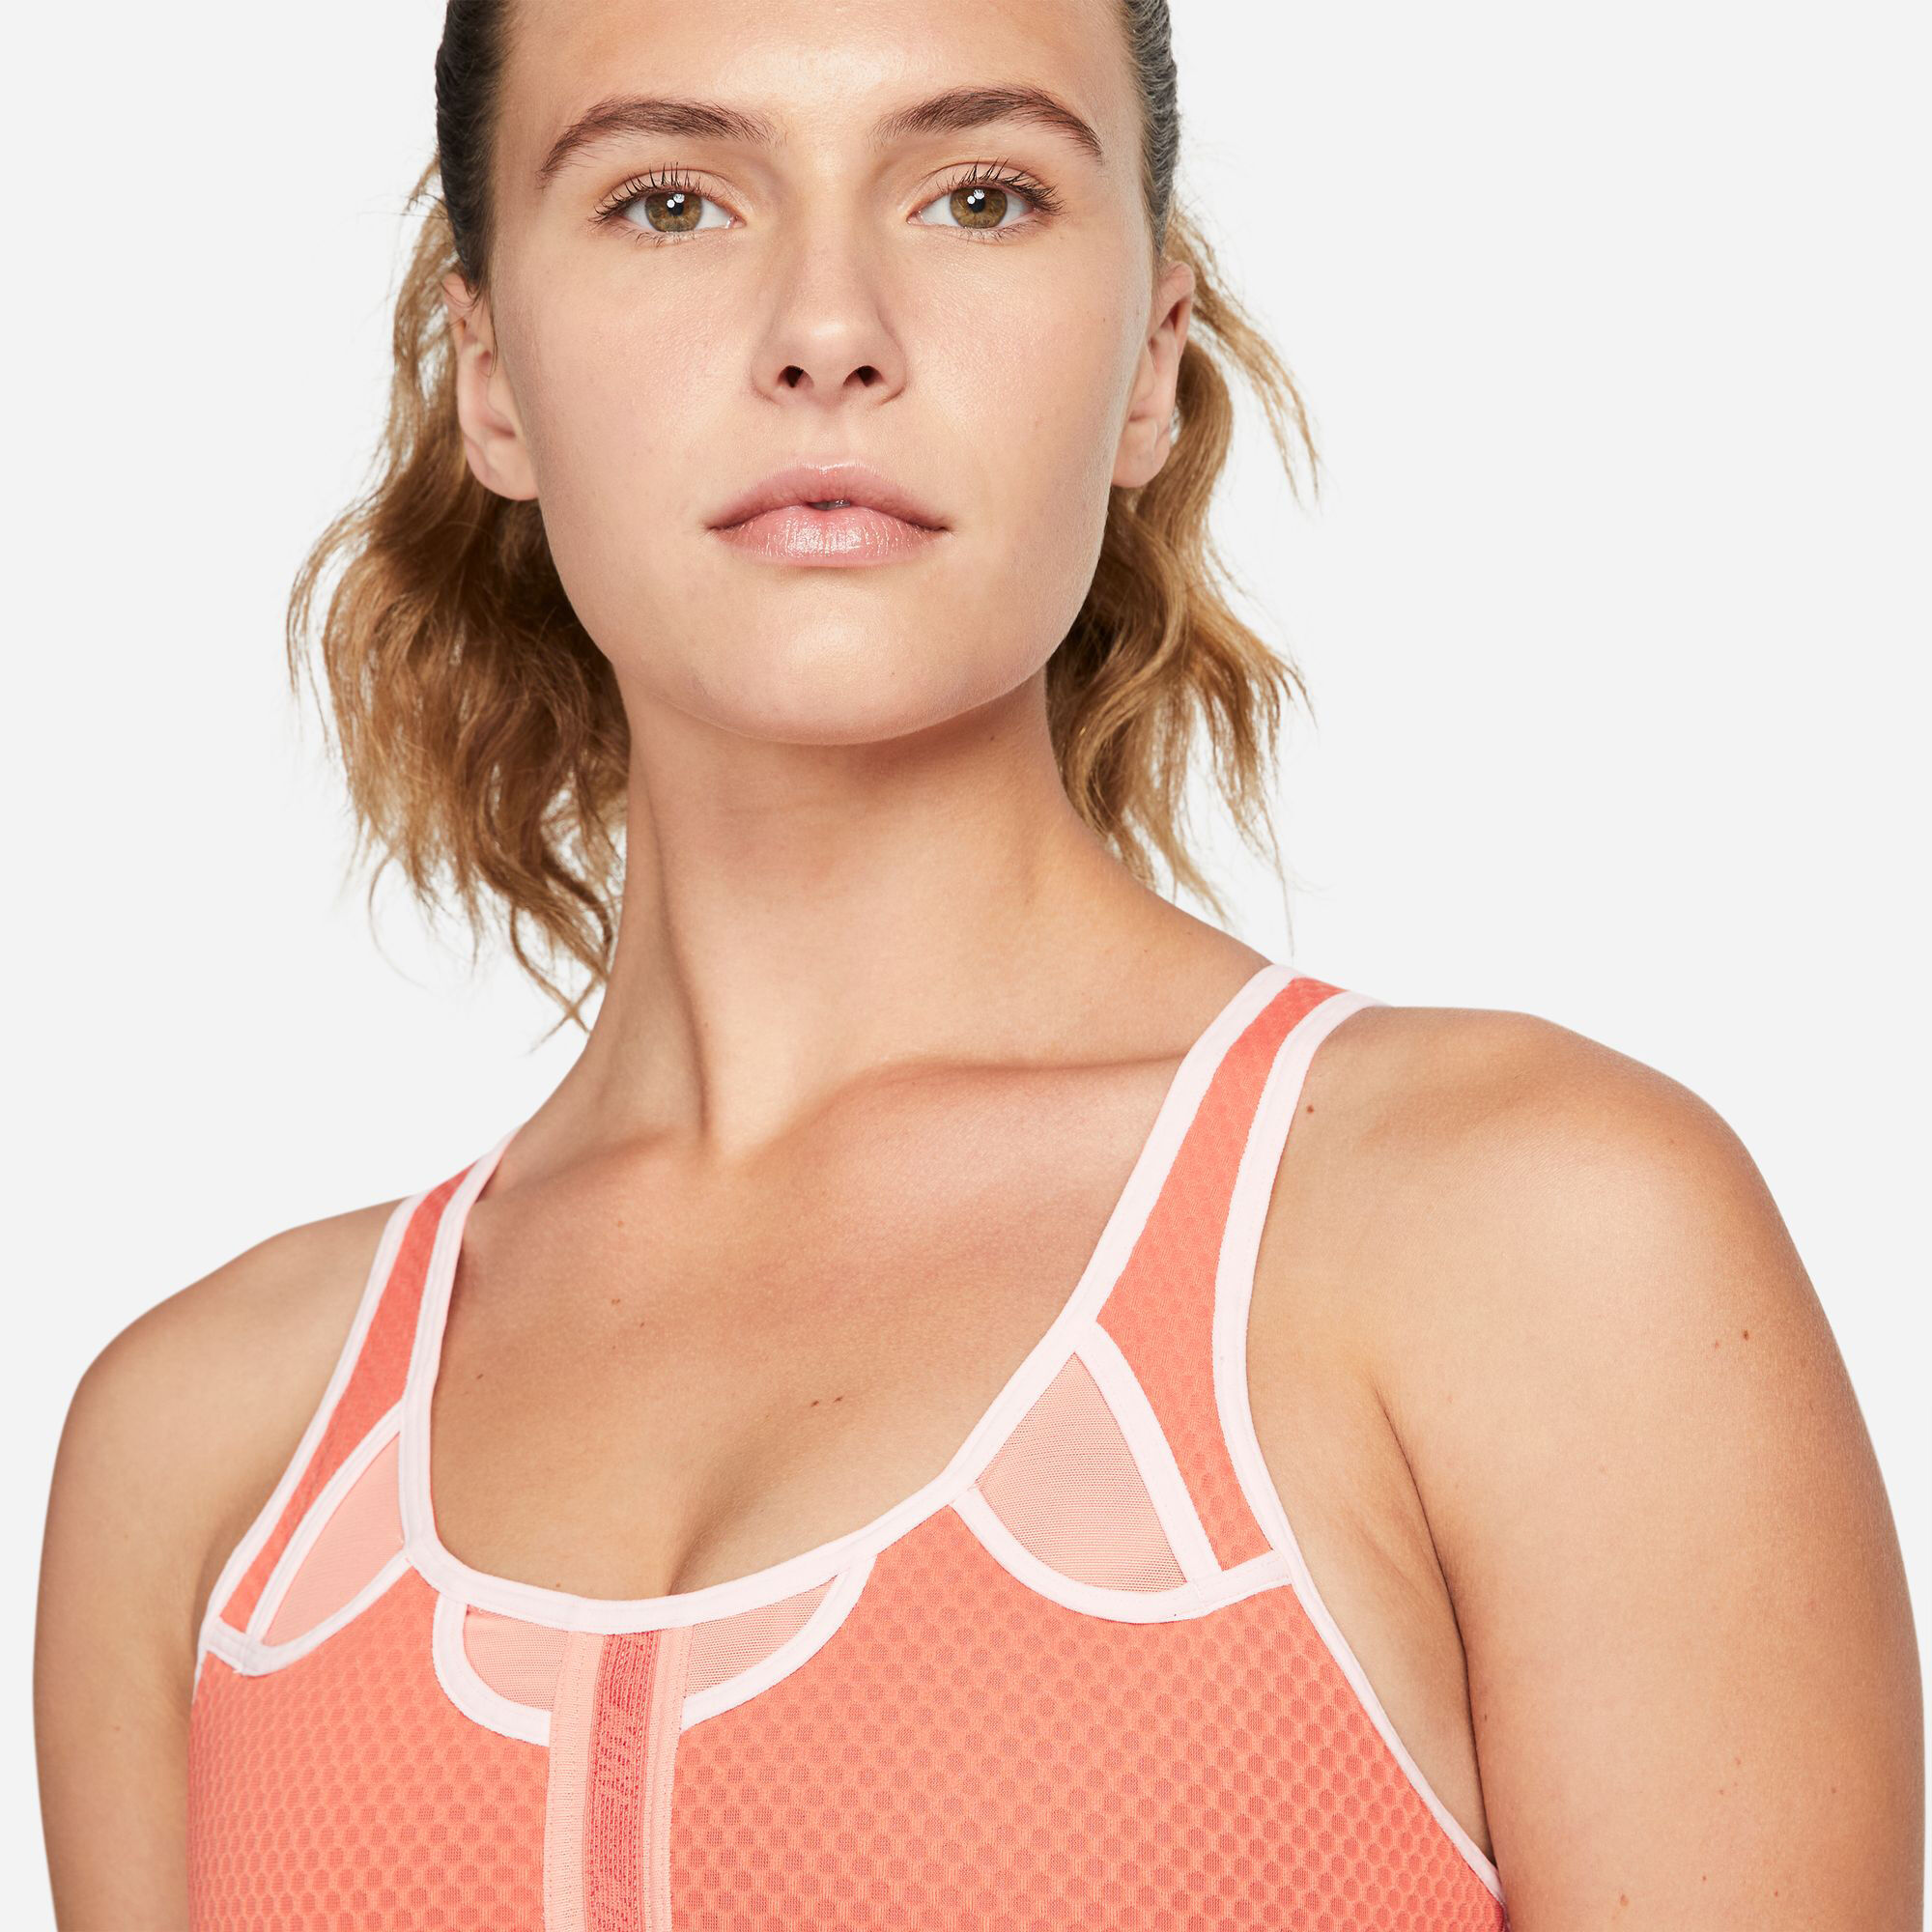 Buy Nike Swoosh UltraBreathe Sports Bras Women Orange, Pink online